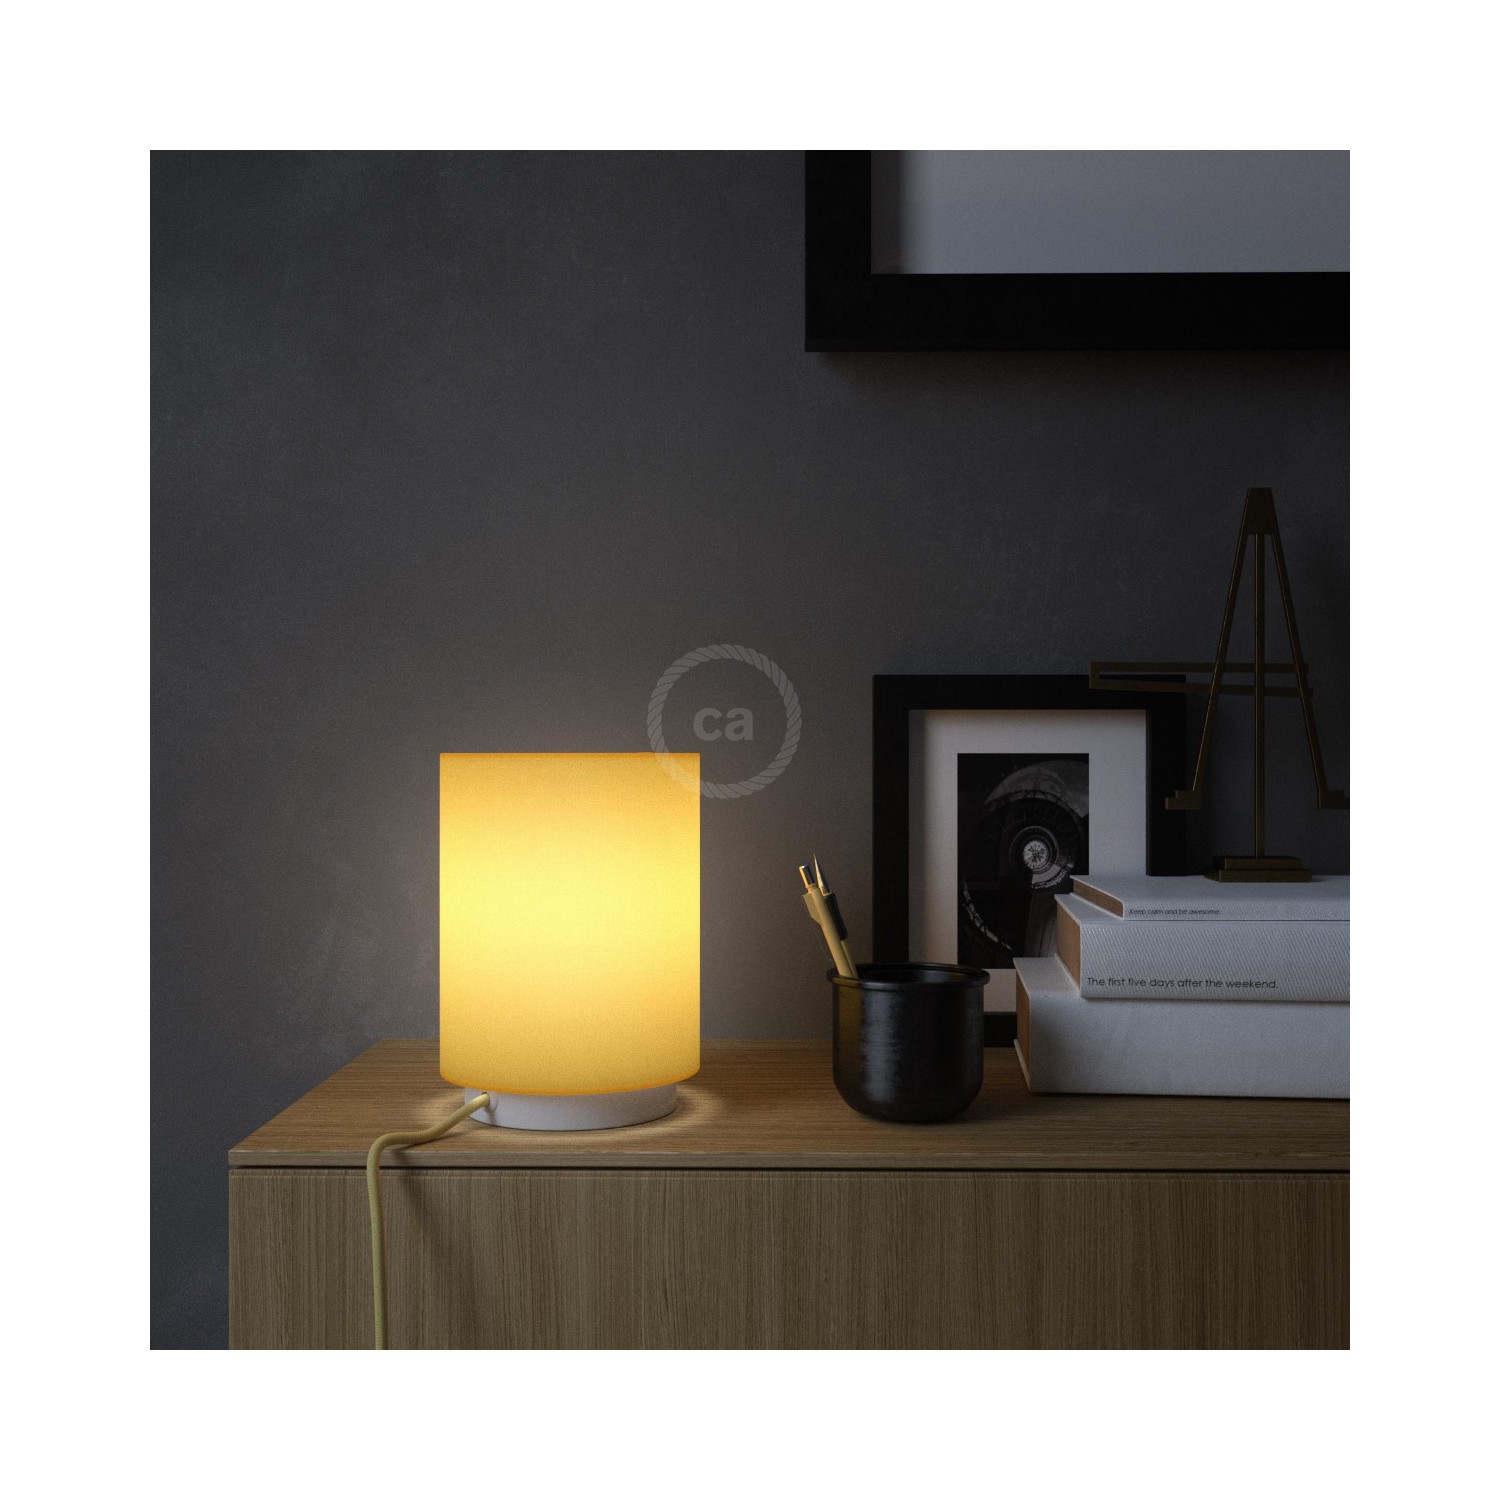 Lampe Posaluce en métal avec abat-jour Cilindro jaune vif, fournie avec câble textile, interrupteur et prise bipolaire